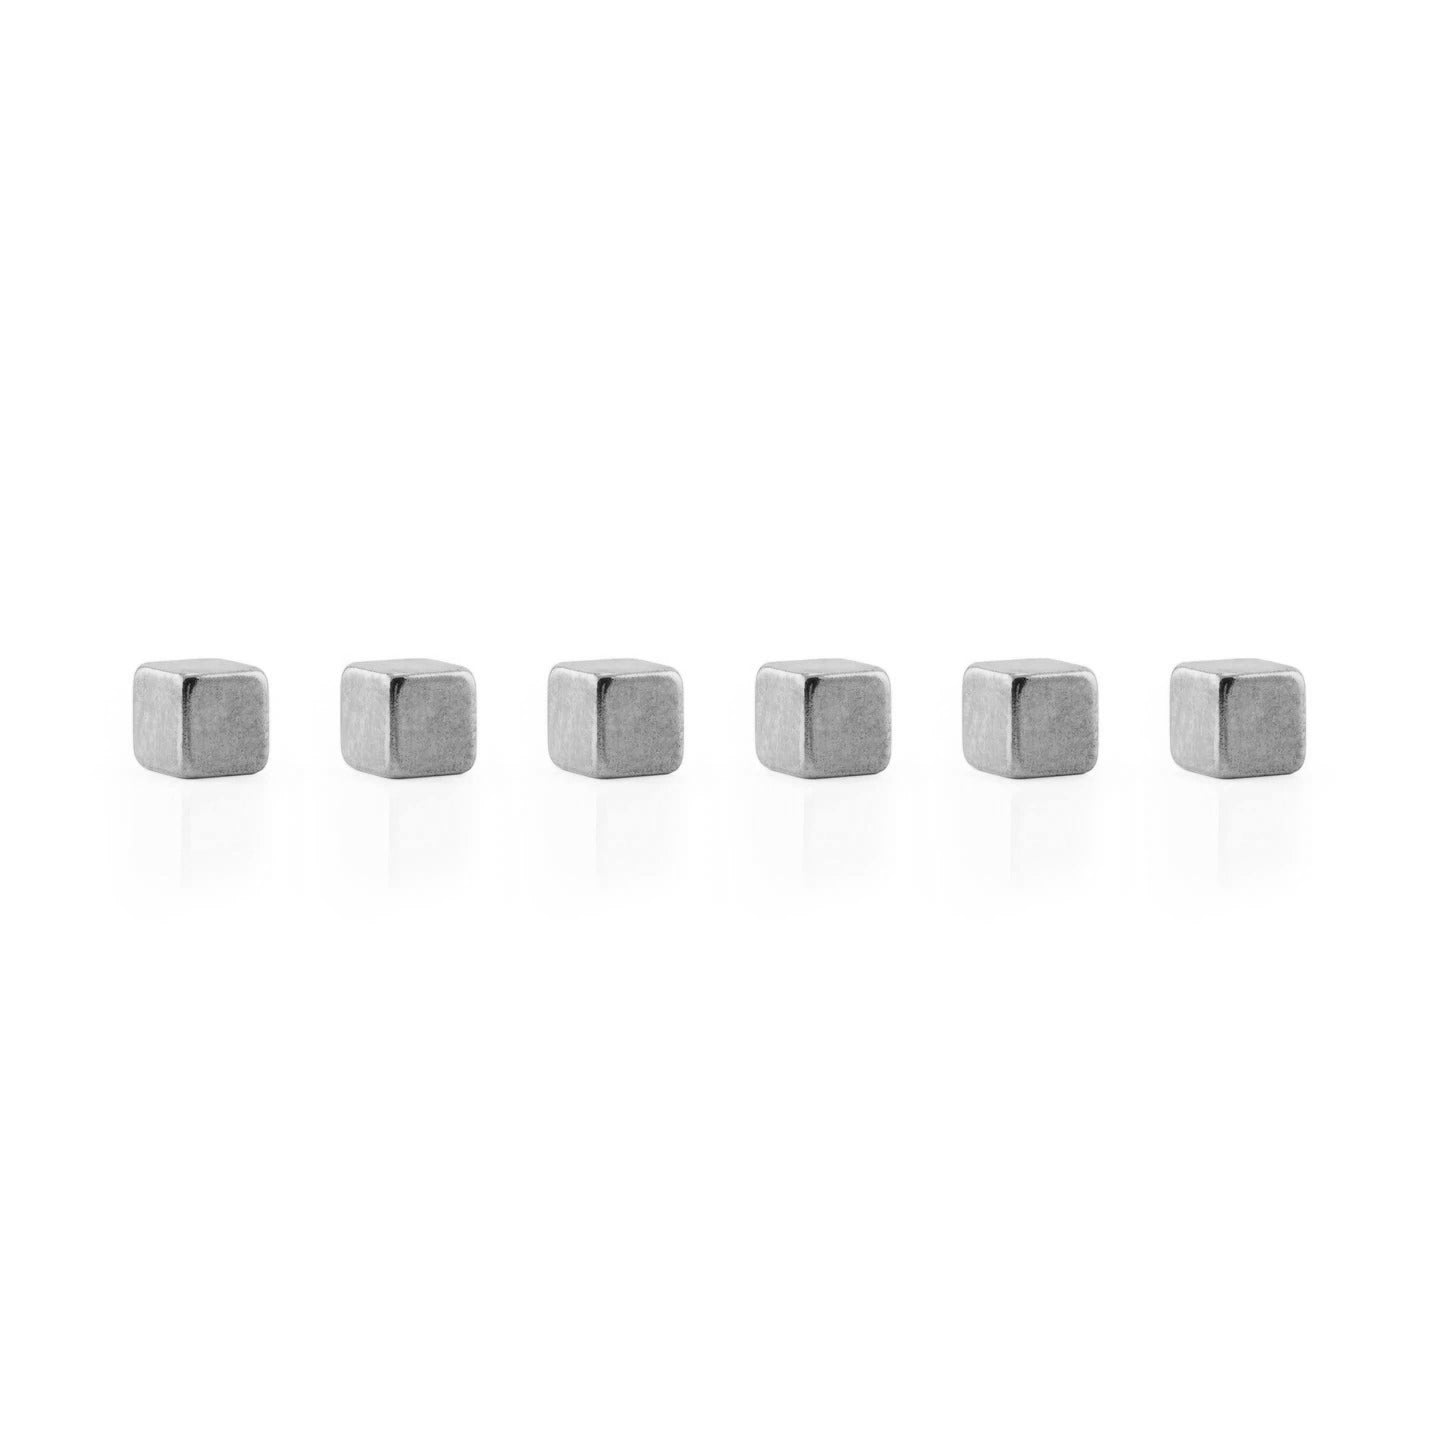 Cube Mighties - super krachtige magneten - verchroomd - Schreuder-kraan.shop